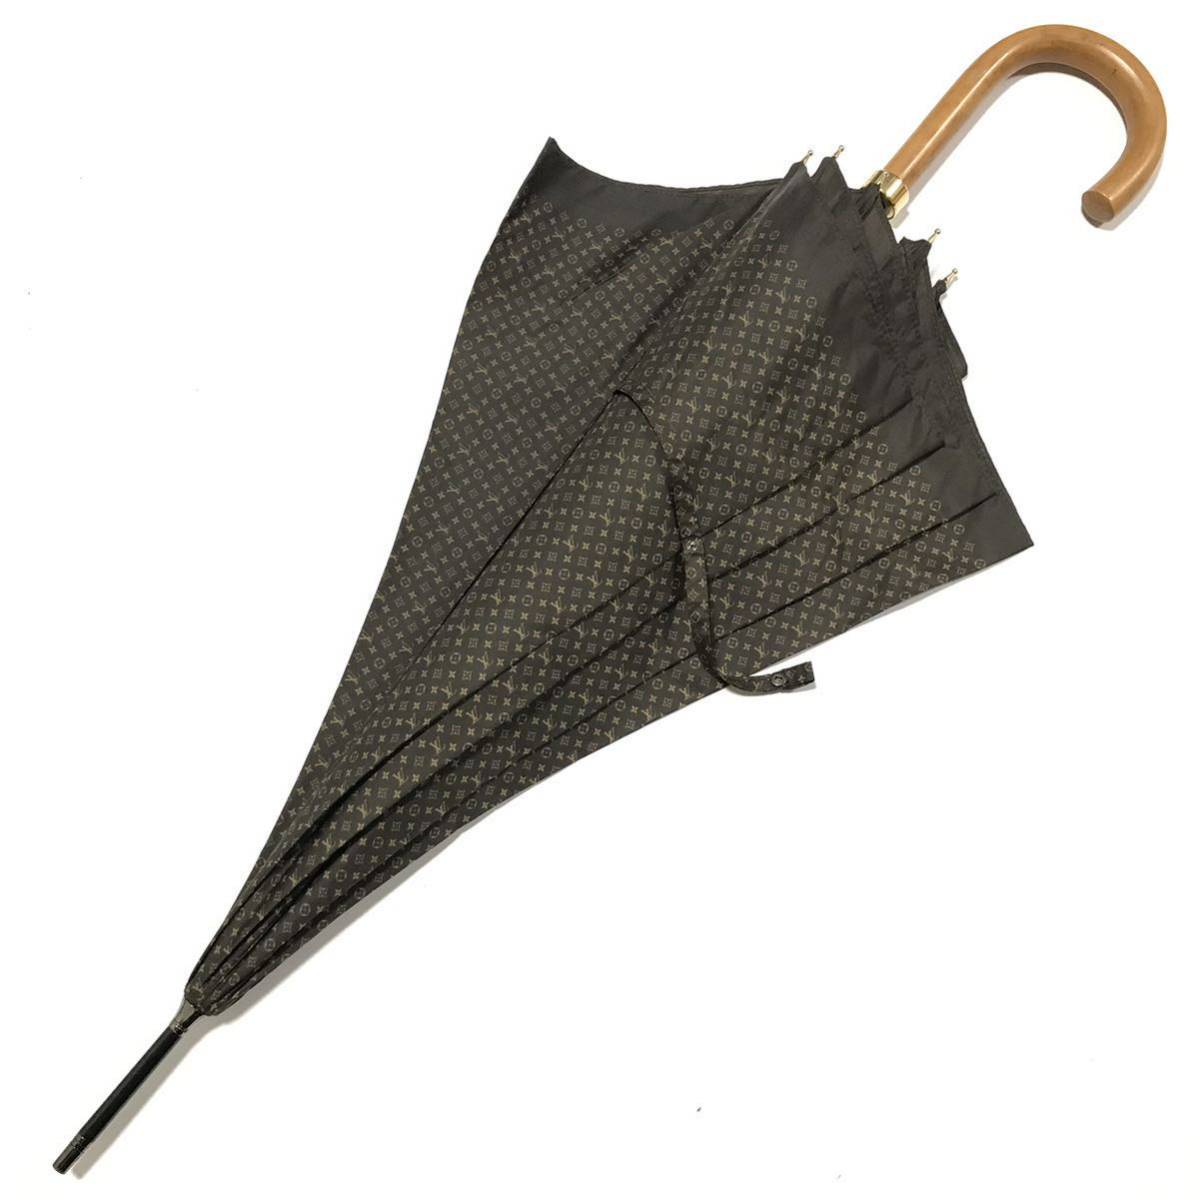 【ルイヴィトン】本物 LOUIS VUITTON 傘 モノグラム M70107 パラプルュイジブレ 全長88cm 雨傘 アンブレラ 長傘 メンズ レディース 仏製